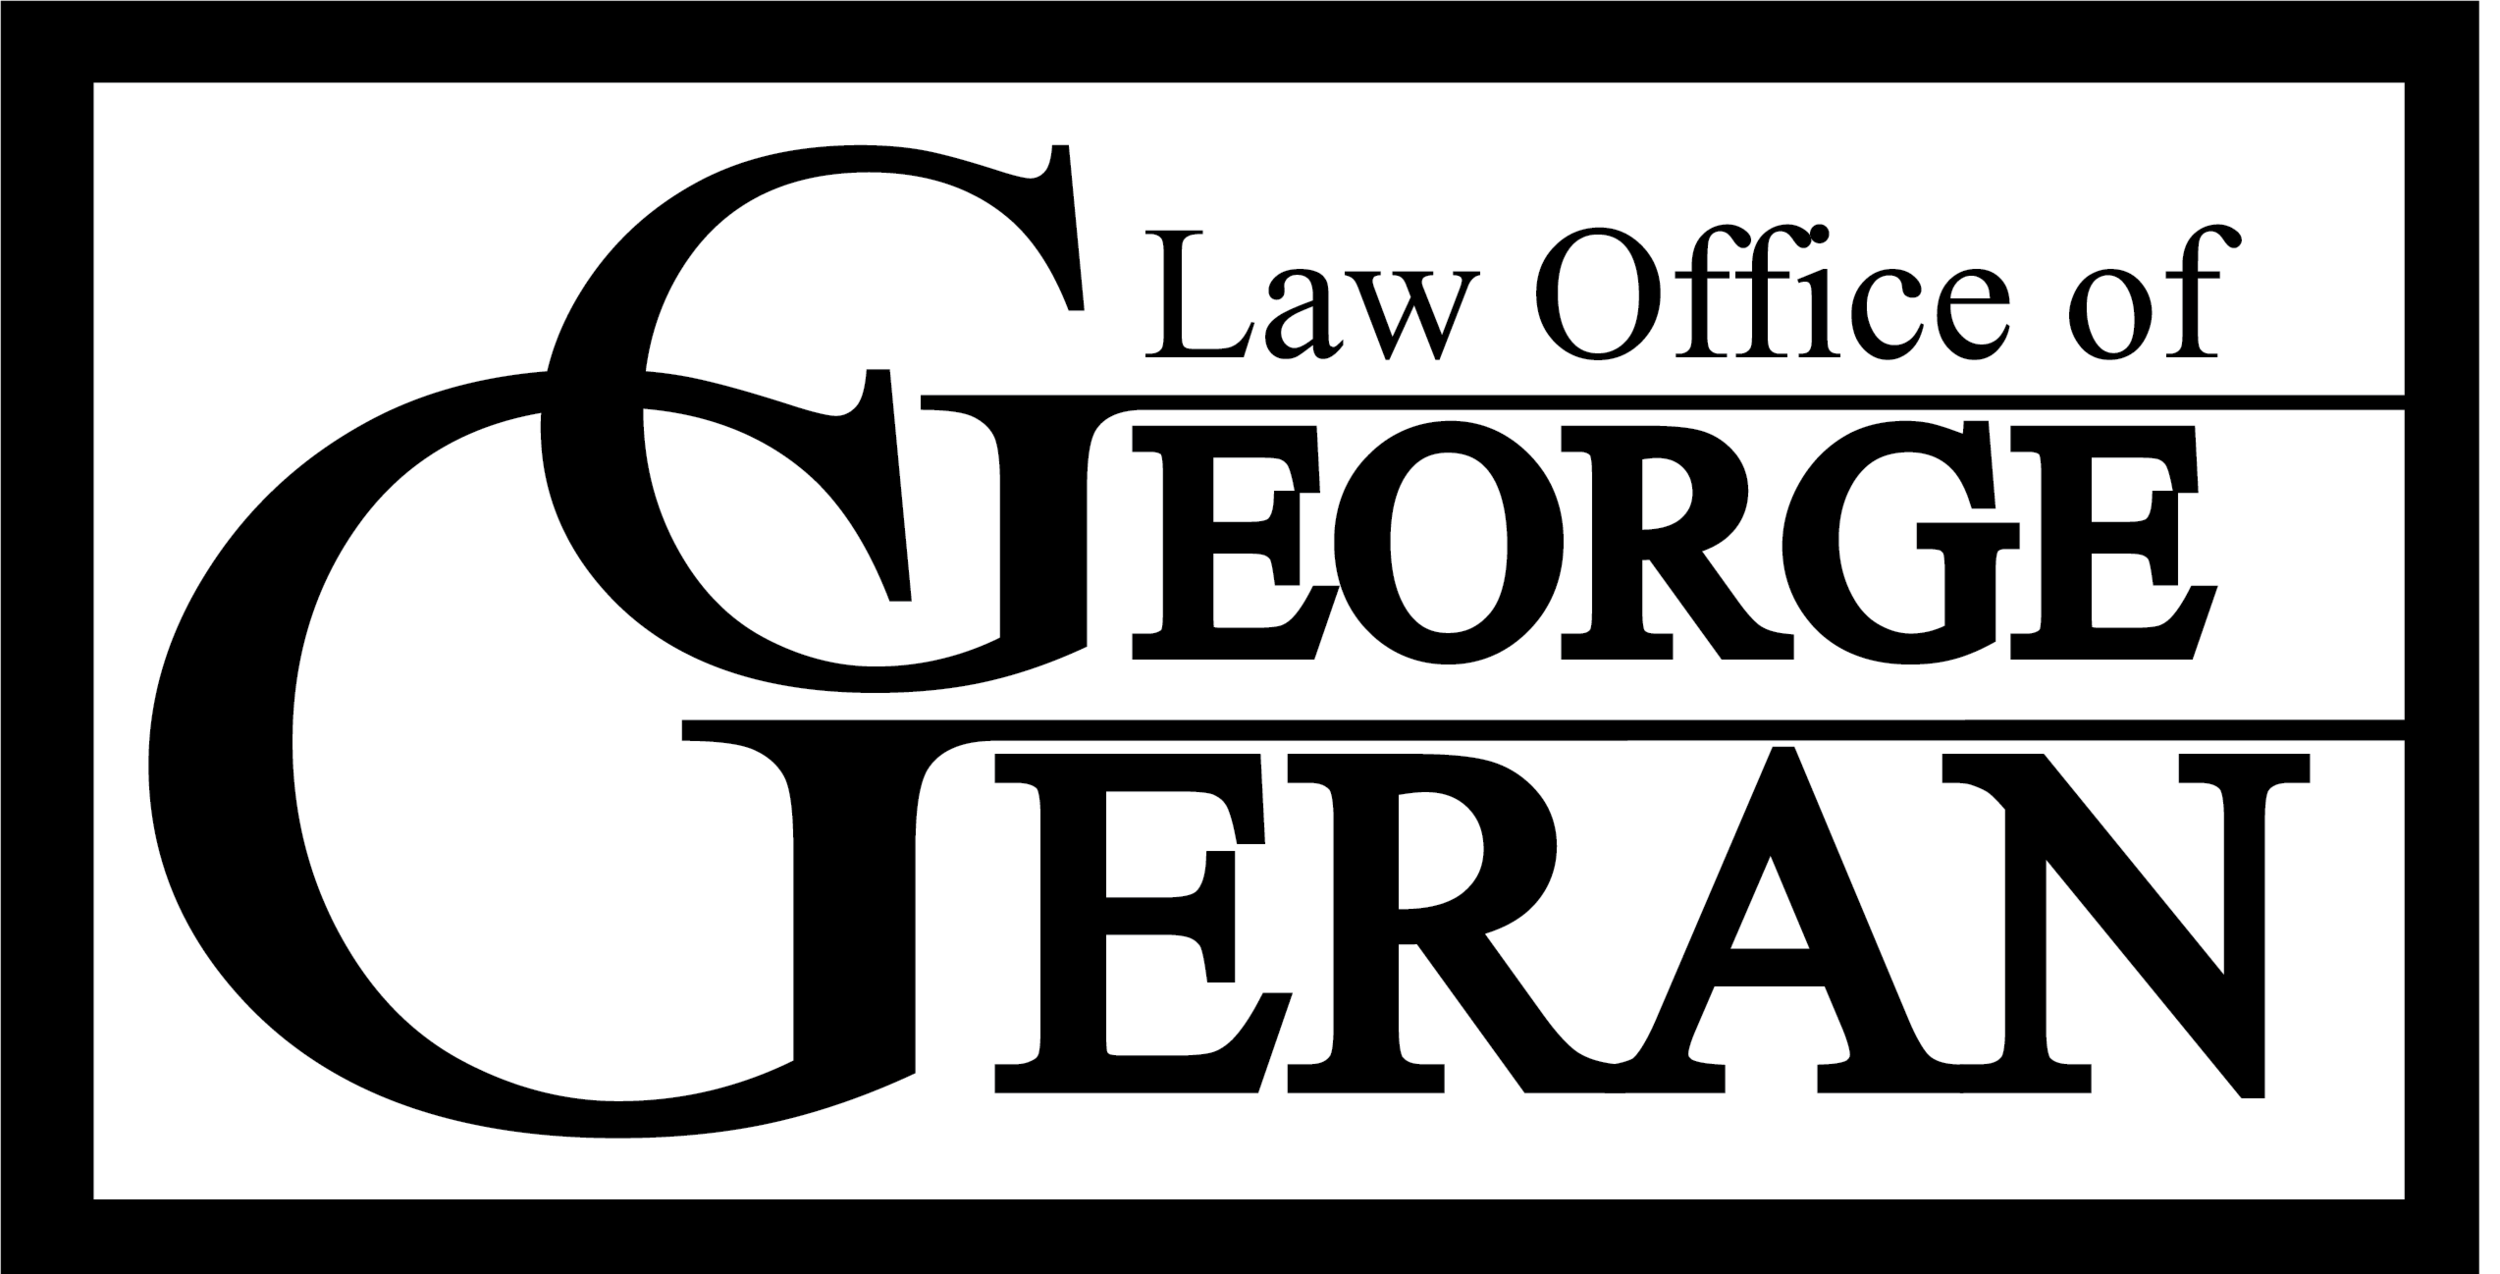 Law Office of George Geran